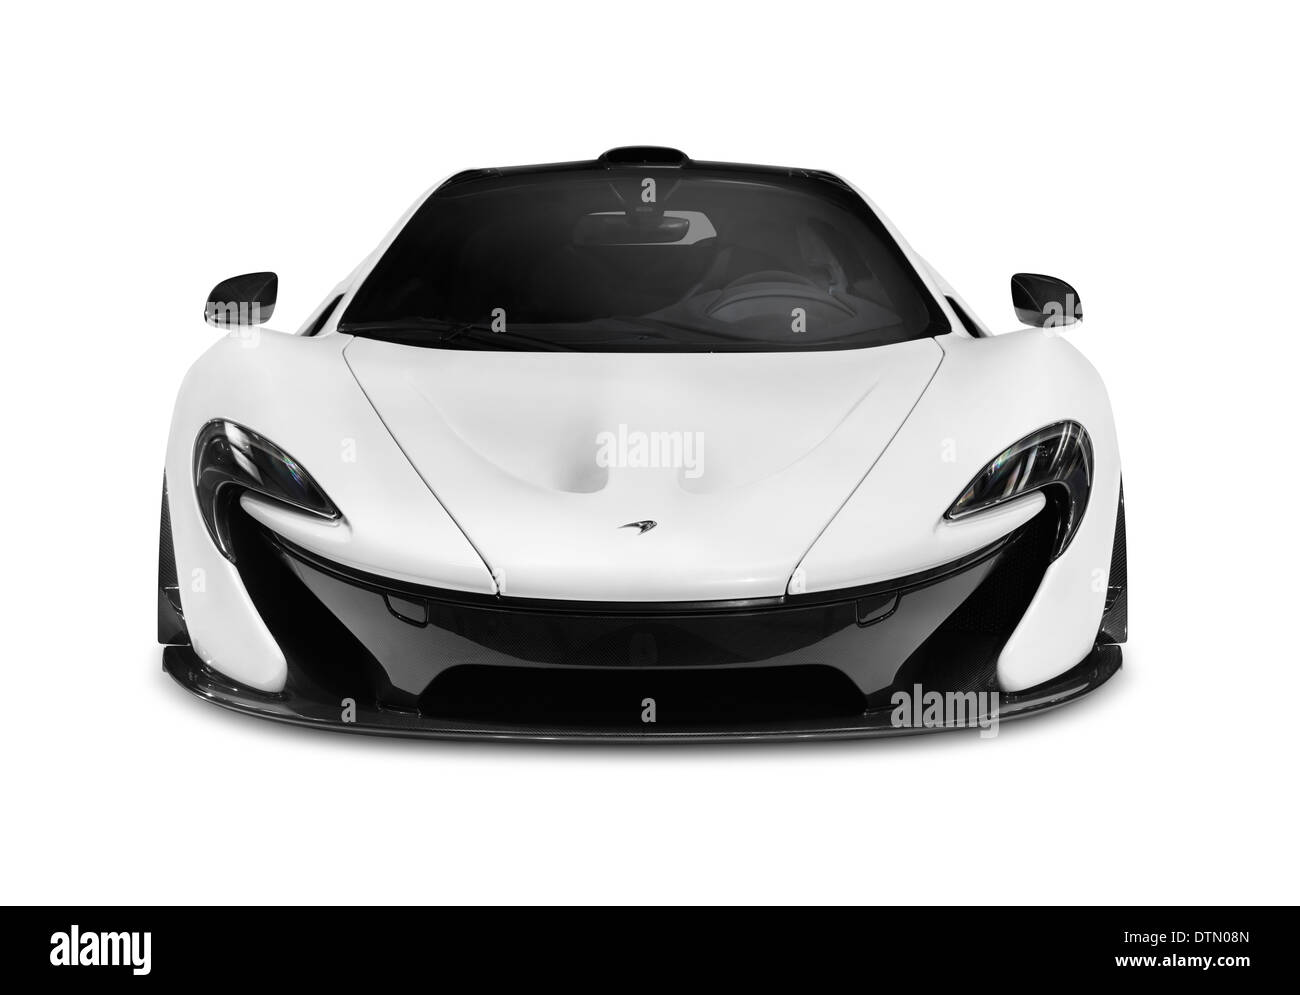 Licence et tirages sur MaximImages.com - McLaren Luxury sports car, supercar, photo de stock automobile. Banque D'Images